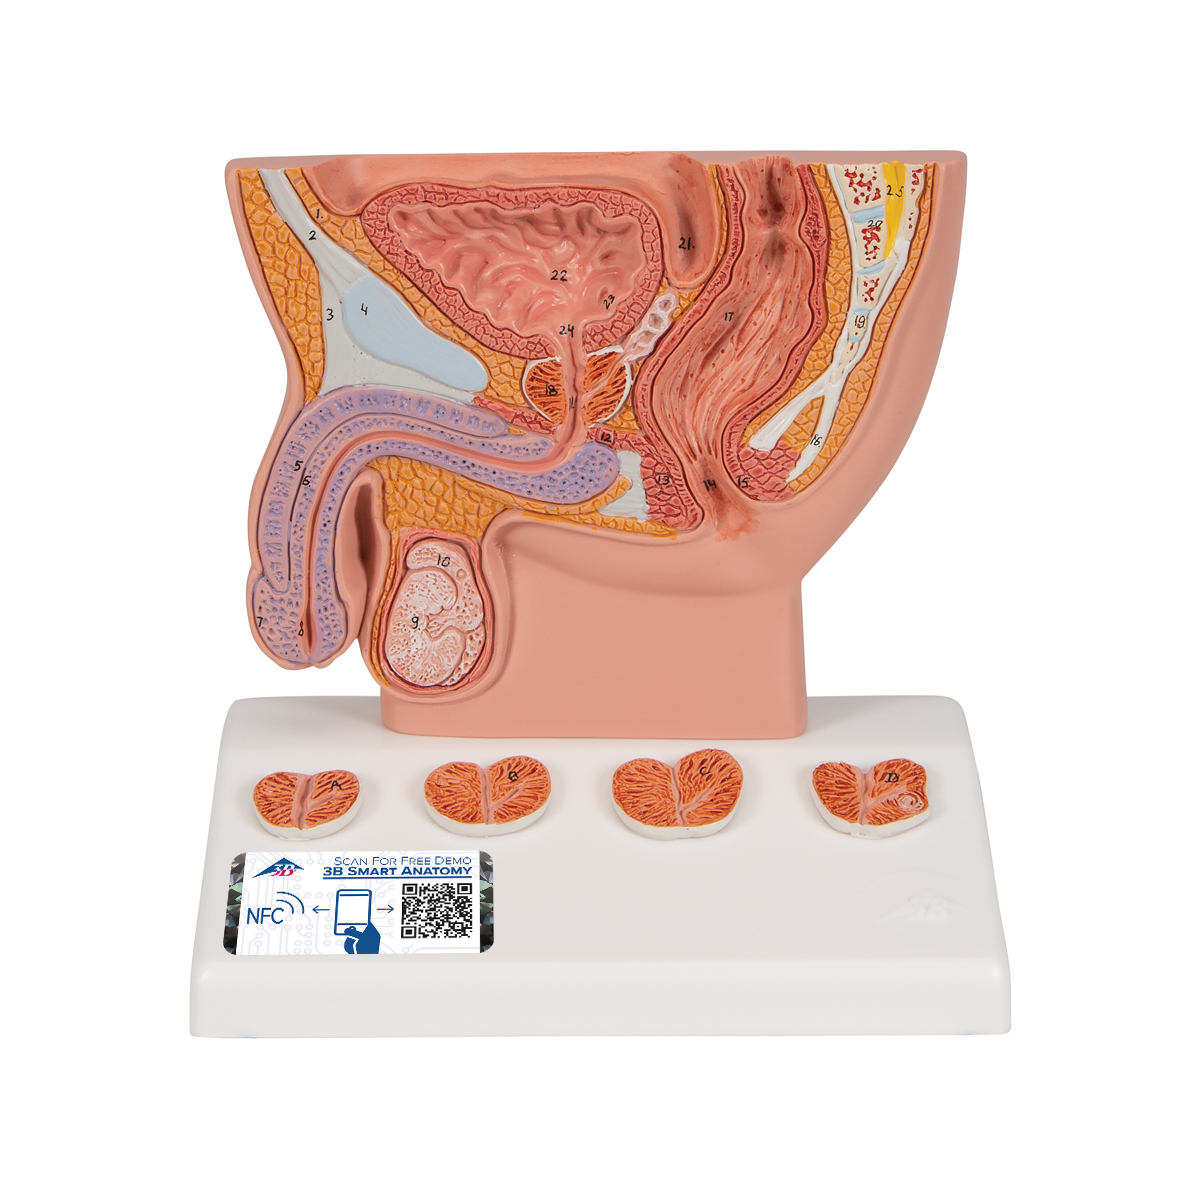 Prostata Modell, 1/2 Größe - 3B Smart Anatomy, Bestellnummer 1000319, K41, 3B Scientific